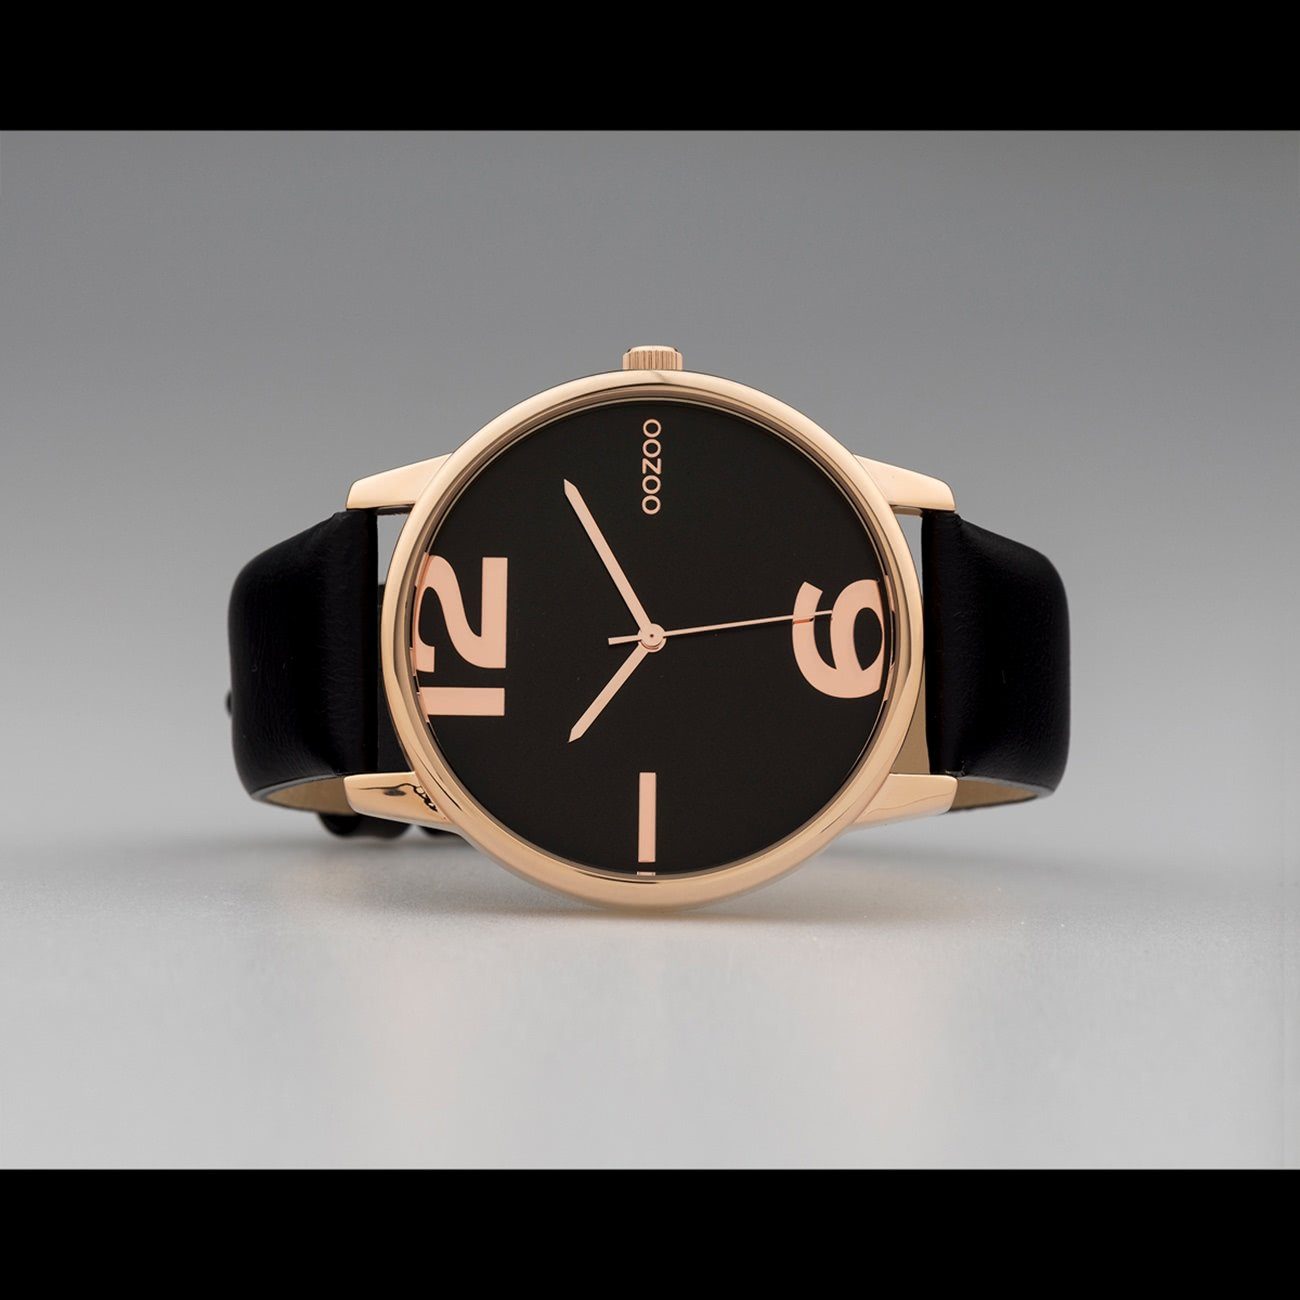 Analog, Damen 45mm) groß OOZOO Armbanduhr Damenuhr (ca. Fashion-Style rund, schwarz Quarzuhr Lederarmband, Oozoo